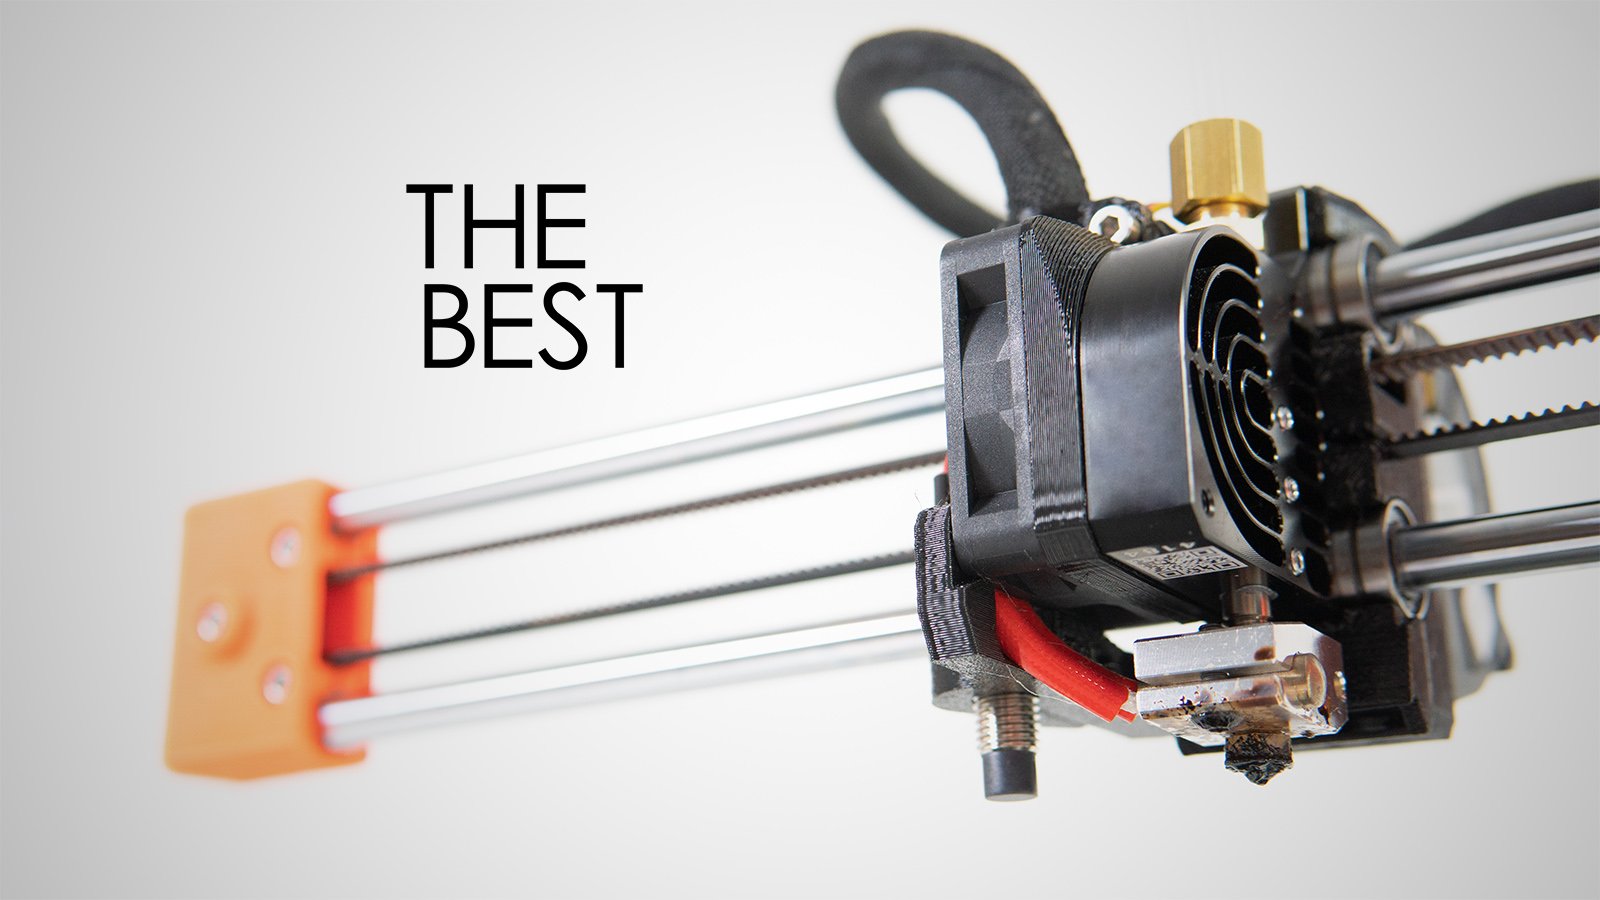 The Best Small / Mini 3D Printers of 2022 - Best Mini Printers LeaD Prusa